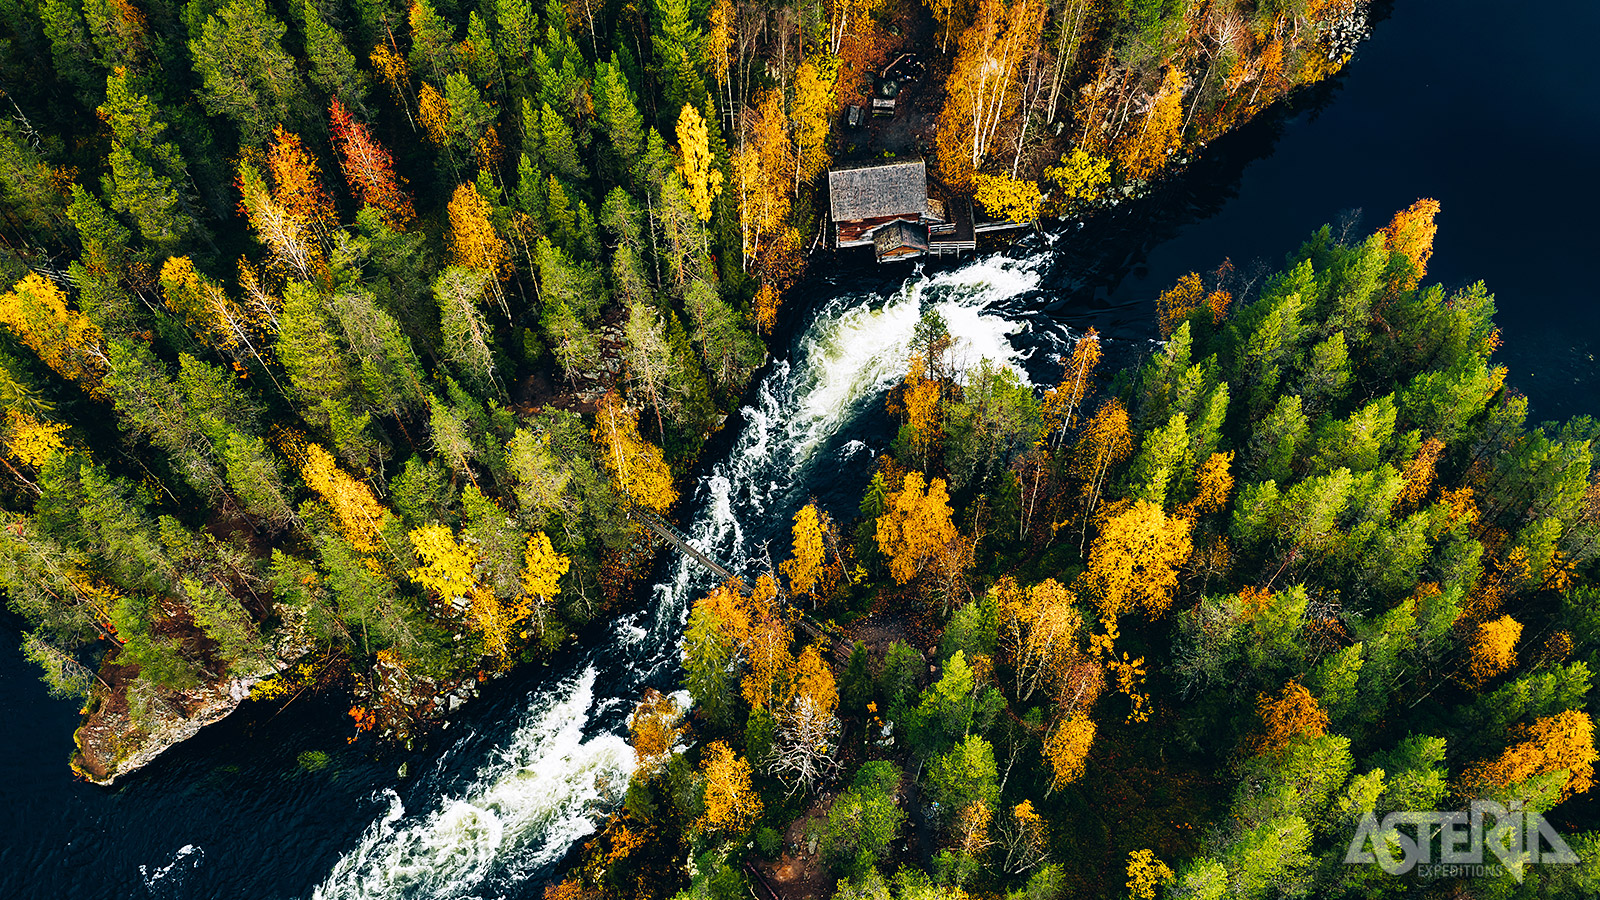 Landschappen in het Oulanka Nationaal Park behoren tot de mooiste van Europa